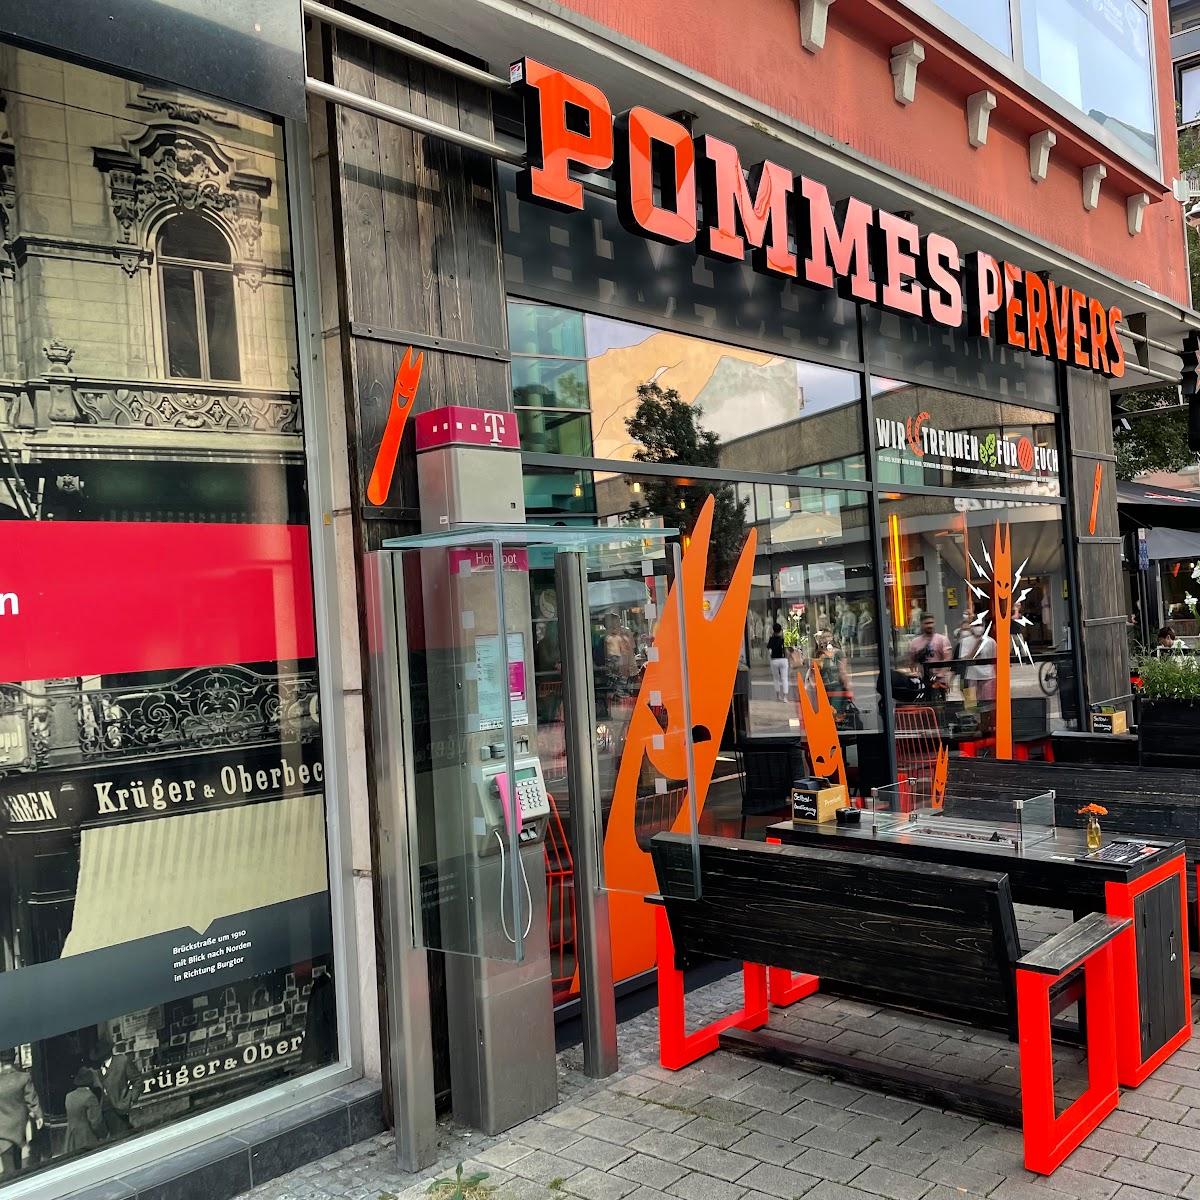 Restaurant "Pommes Pervers" in Dortmund